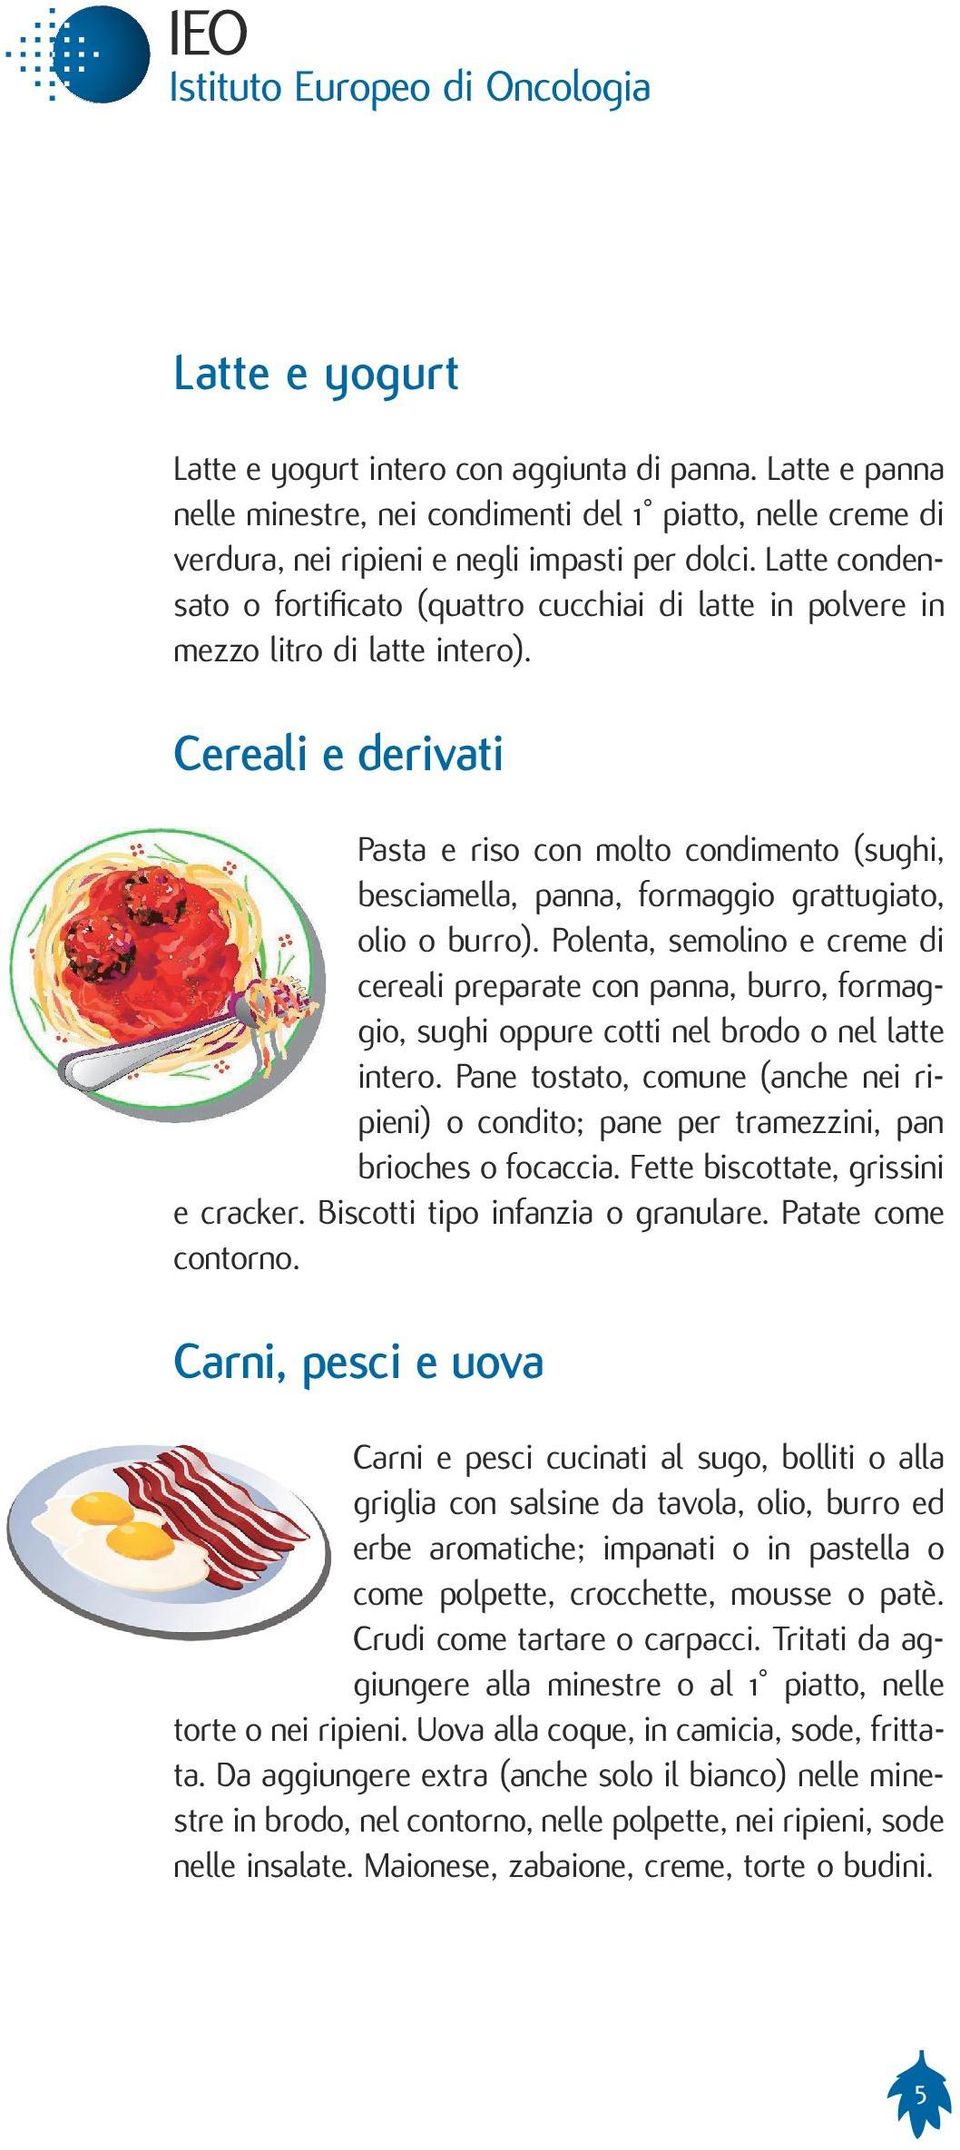 Cereali e derivati Pasta e riso con molto condimento (sughi, besciamella, panna, formaggio grattugiato, olio o burro).